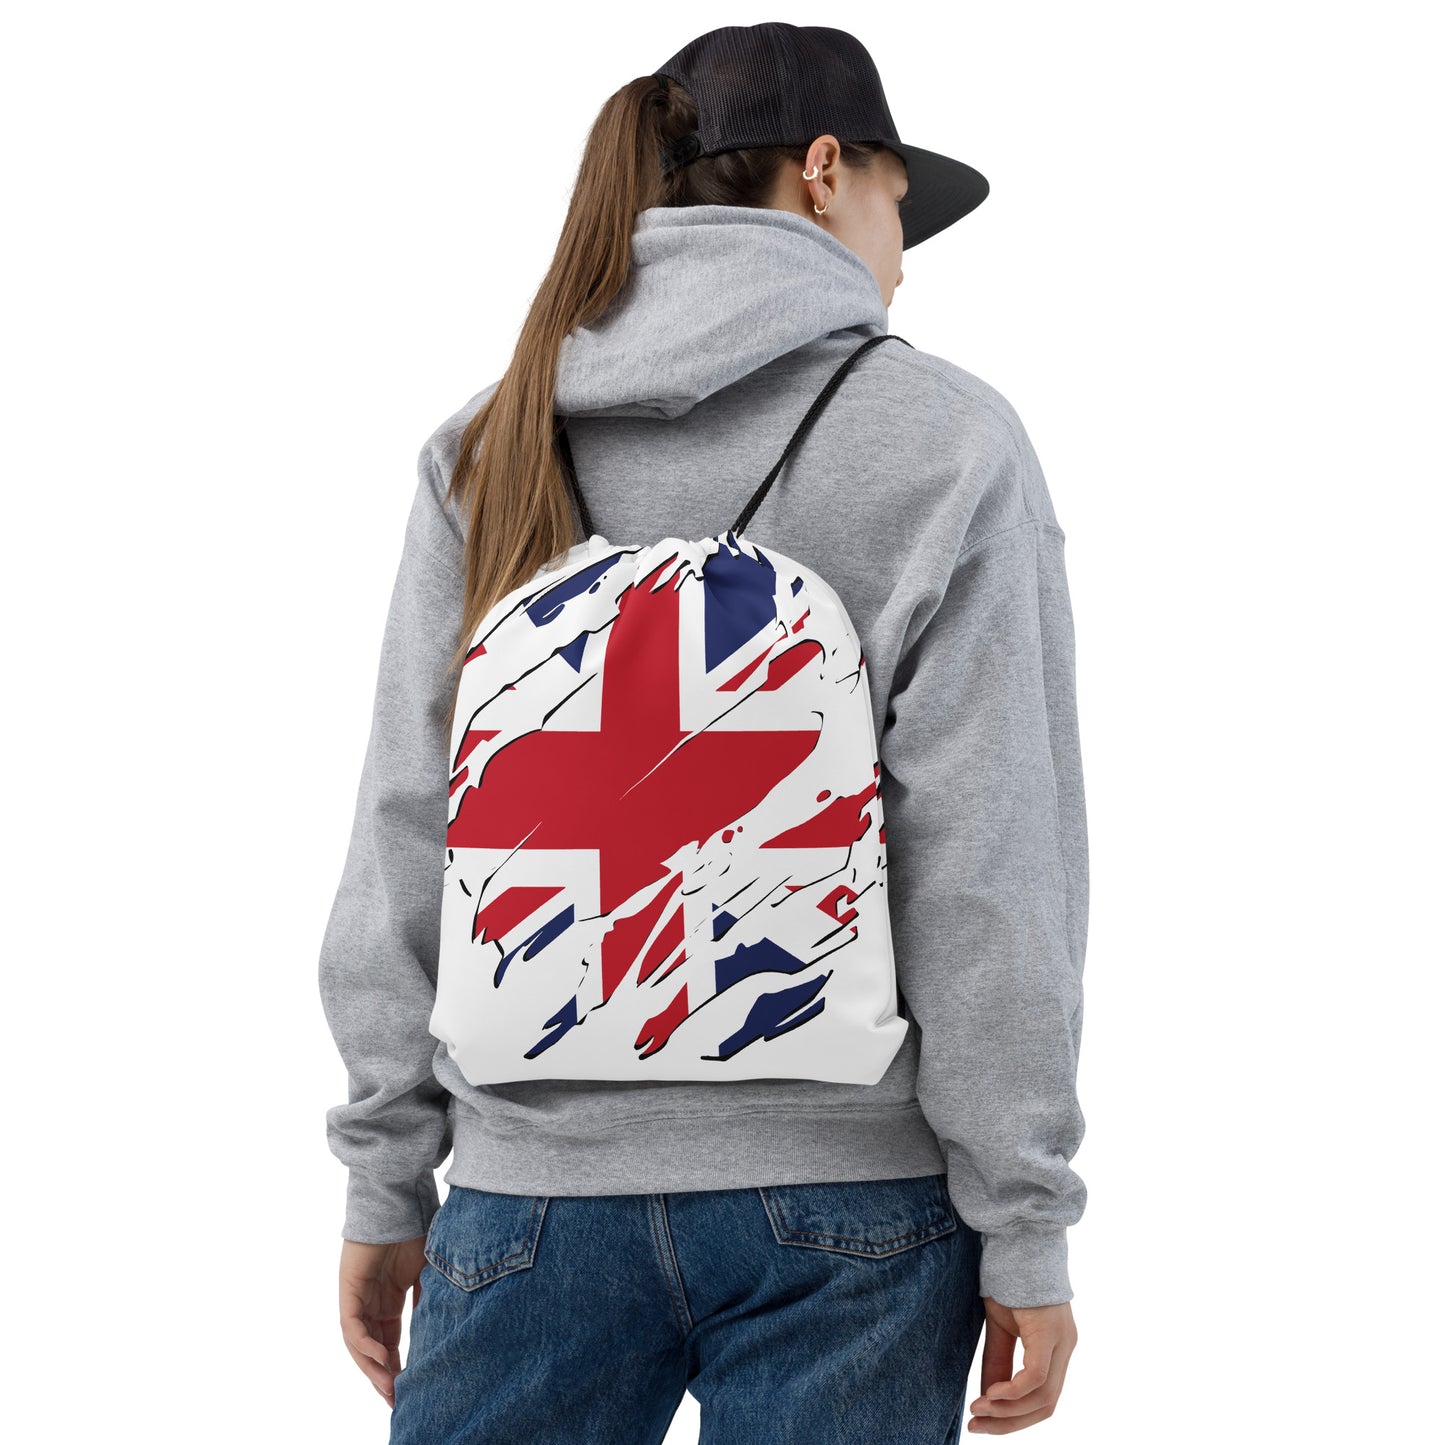 "UK" drawstring bag